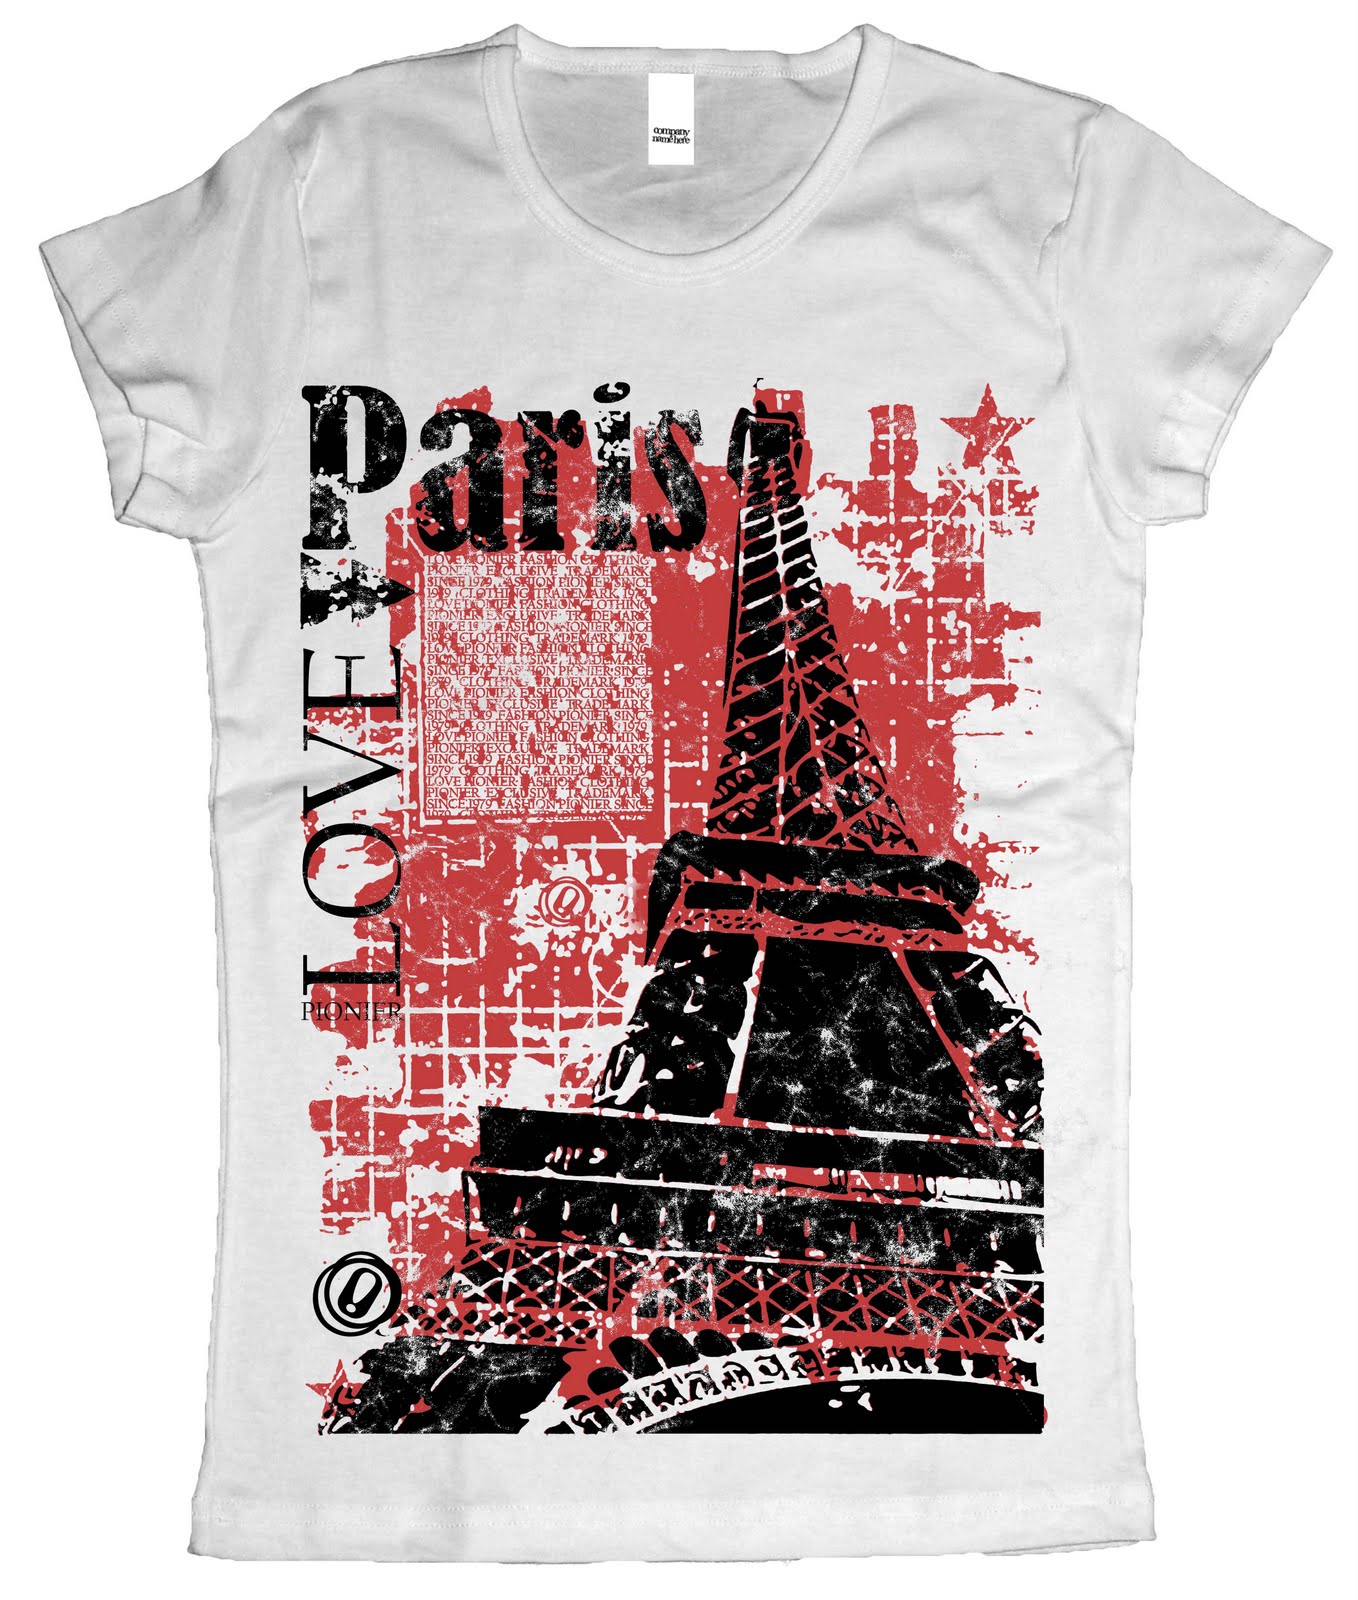 Graphic Design for t-shirts: Paris